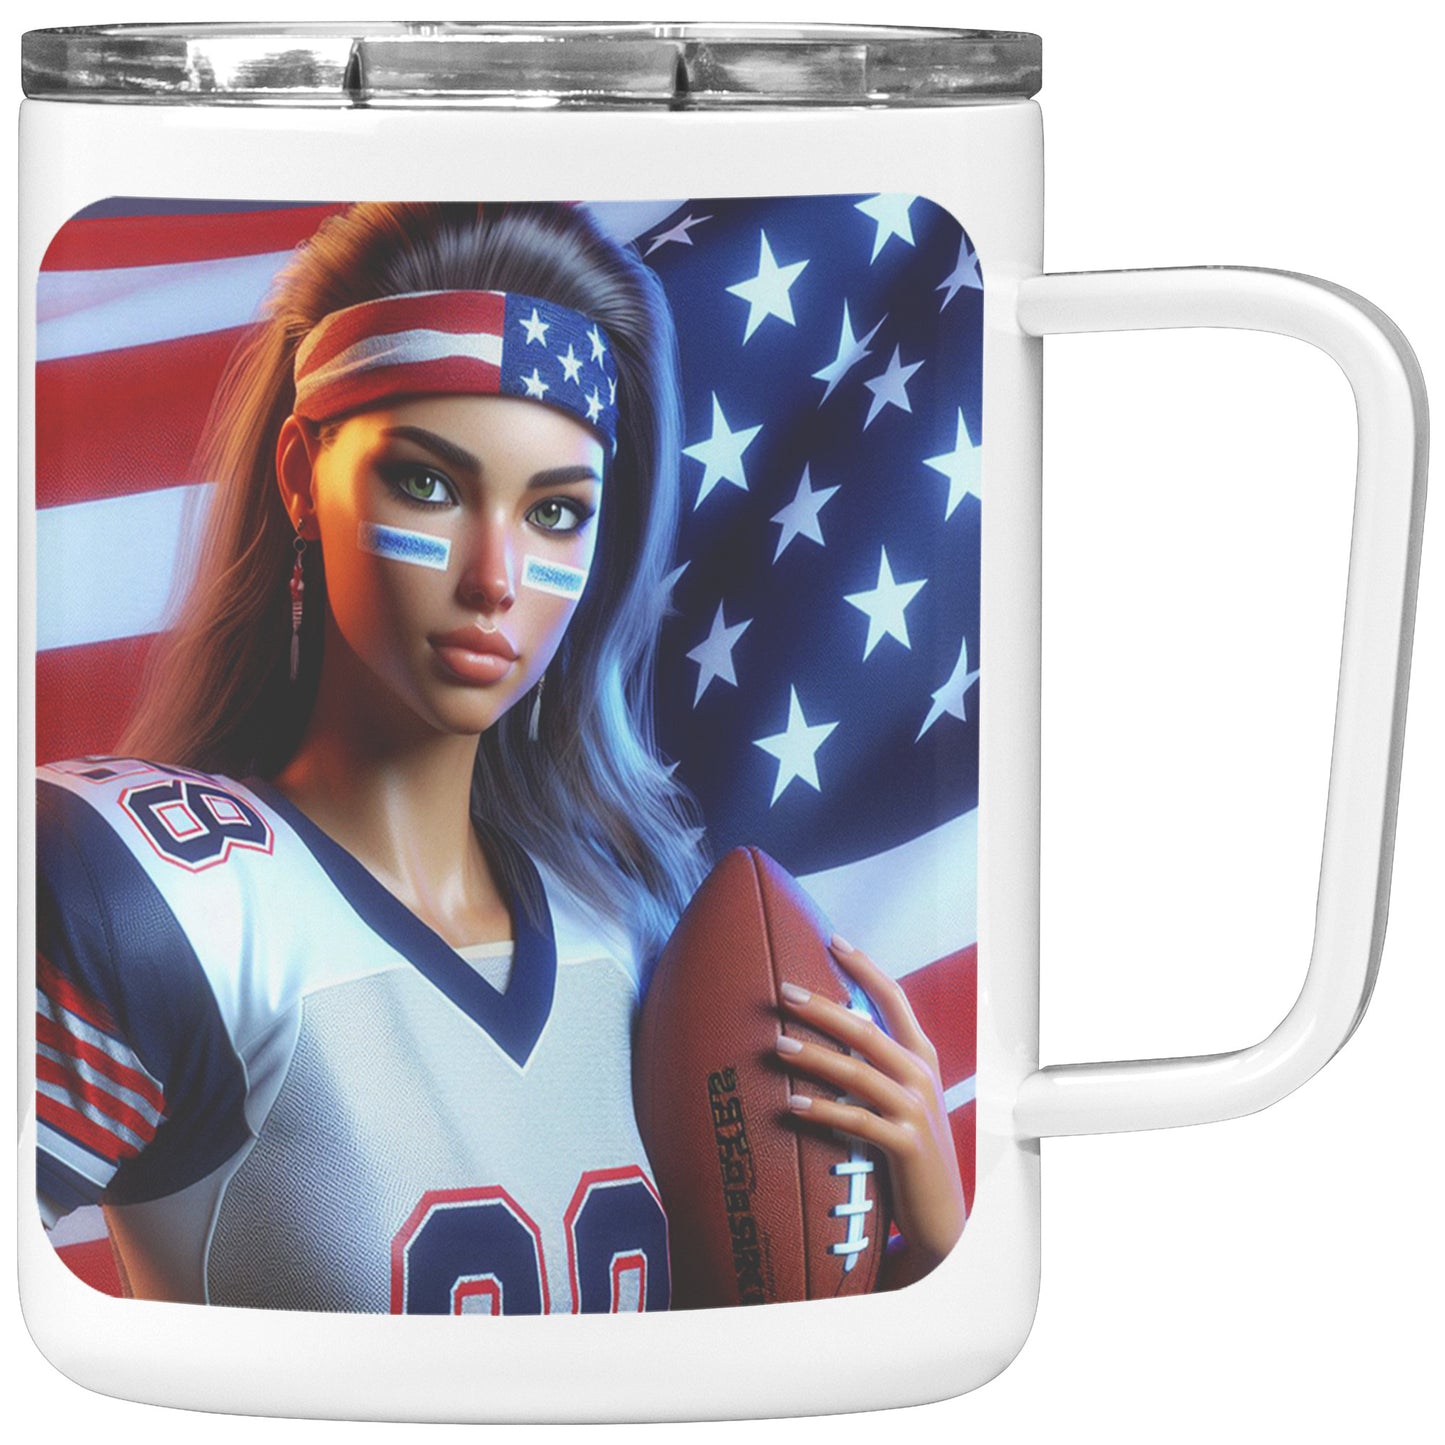 Woman Football Player - Insulated Coffee Mug #45